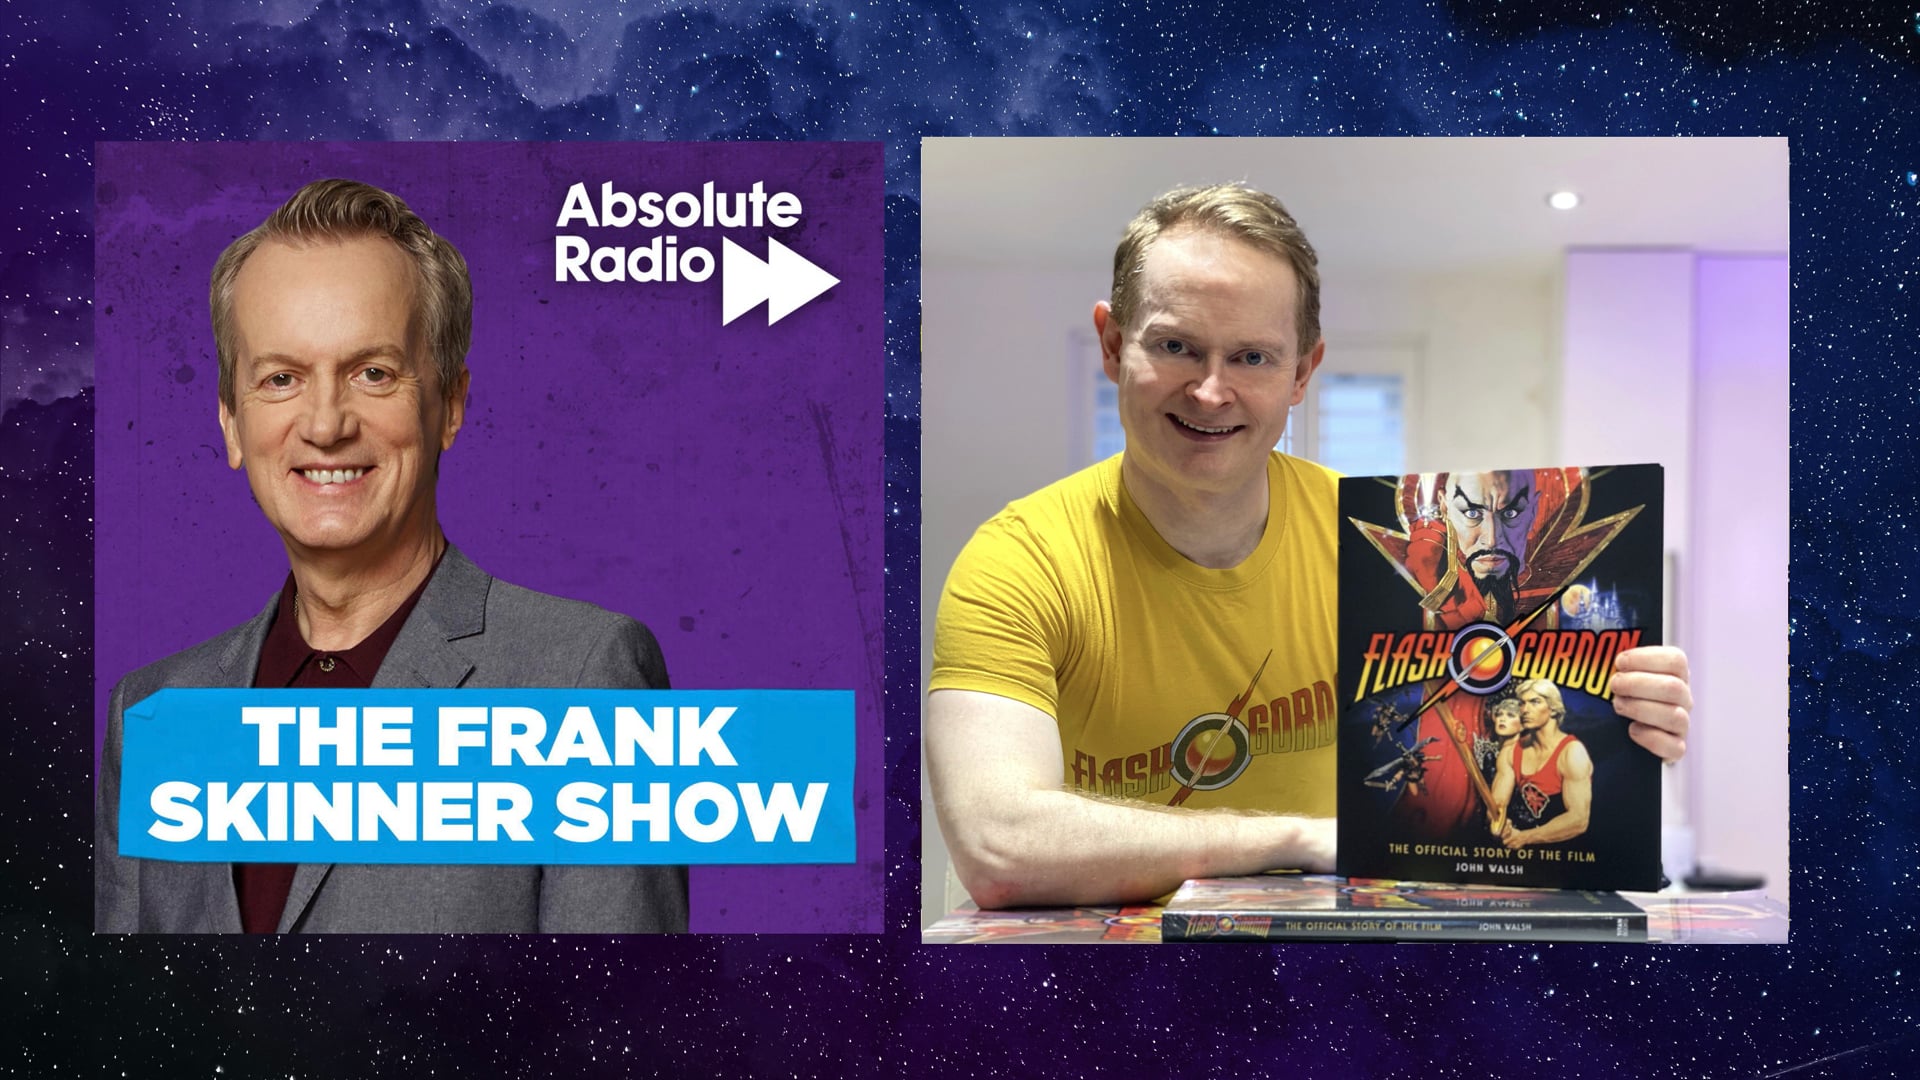 Frank Skinner 's verdict on Flash Gordon: The Official Story of the Film